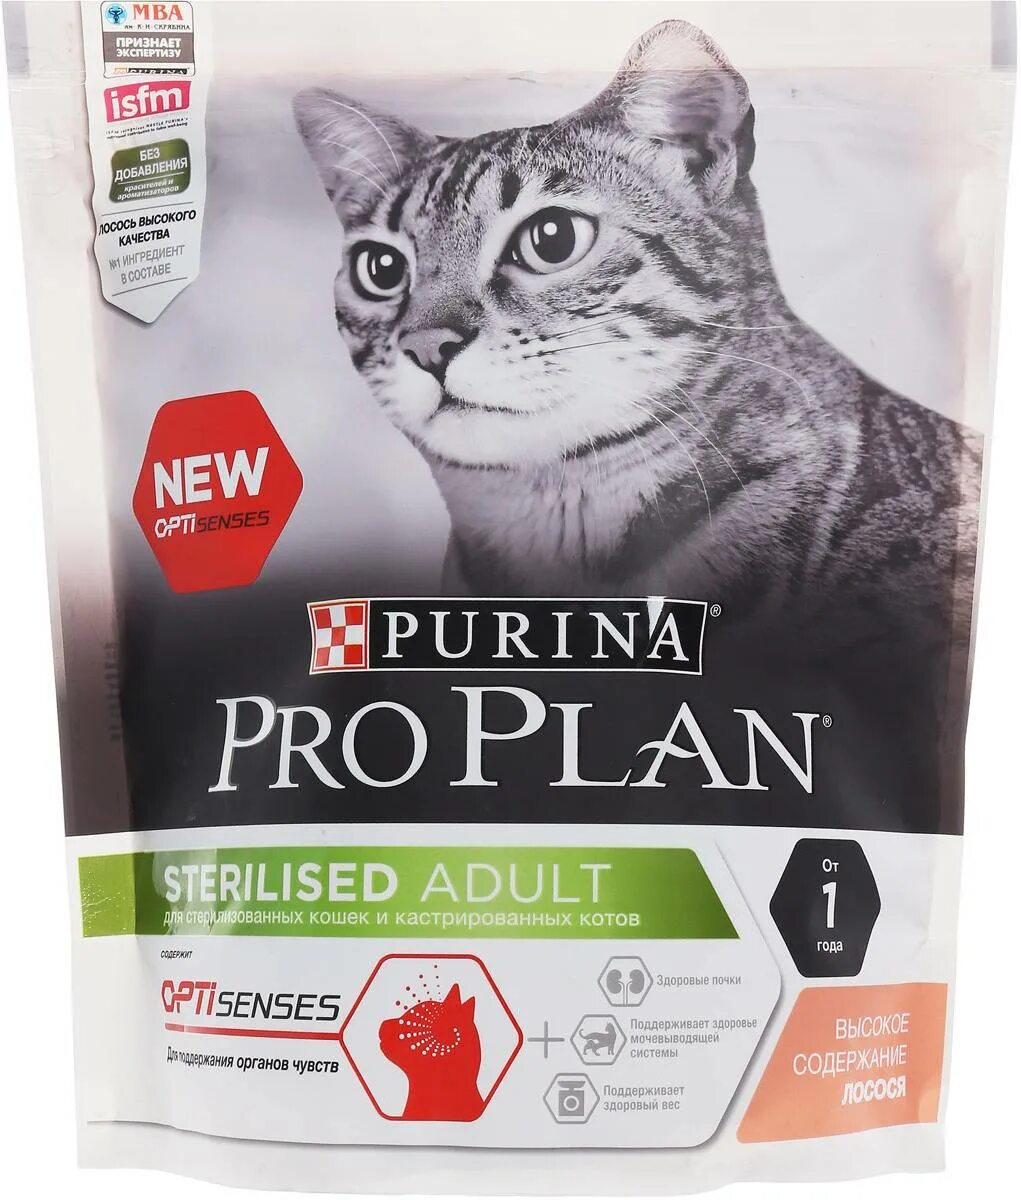 Корм для кошек Пурина Проплан для стерилизованных. Пурина про план корм для кошек стерилизованных сухой Проплан. Корм для кошек Пурина Проплан для стерилизованных кошек. Purina PROPLAN для кастрированных кошек.